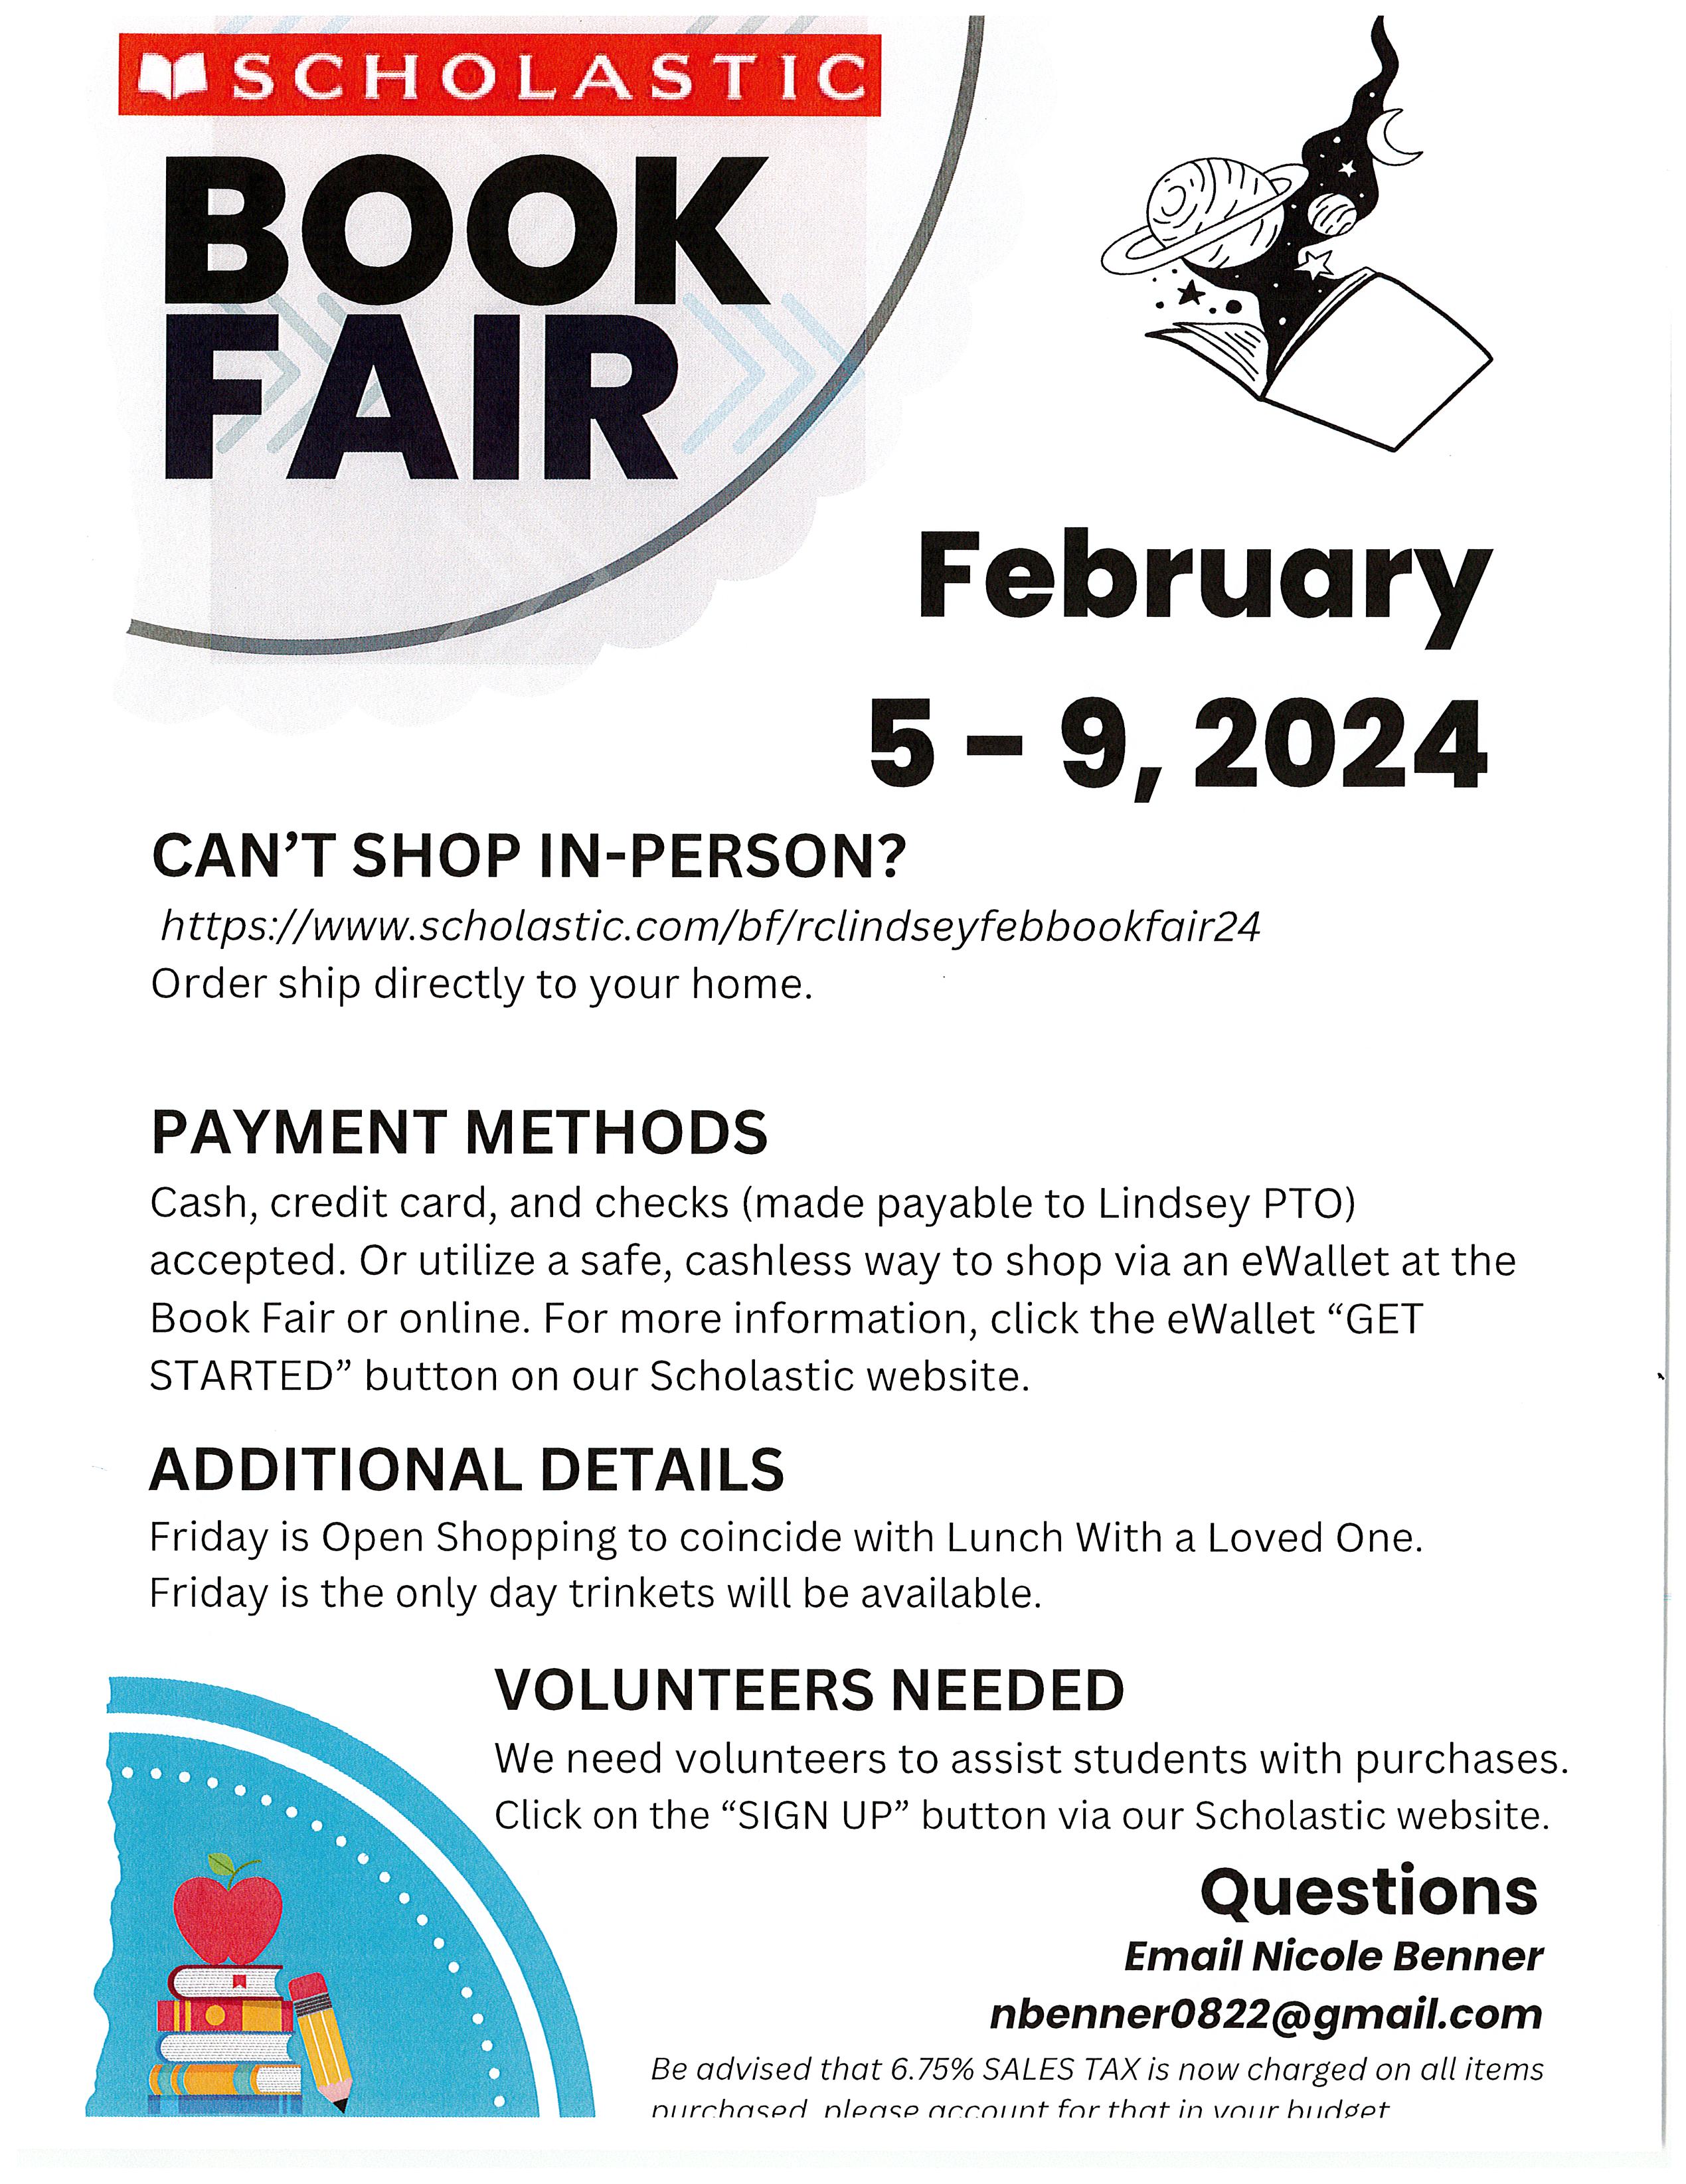 Book Fair Feb 5-9